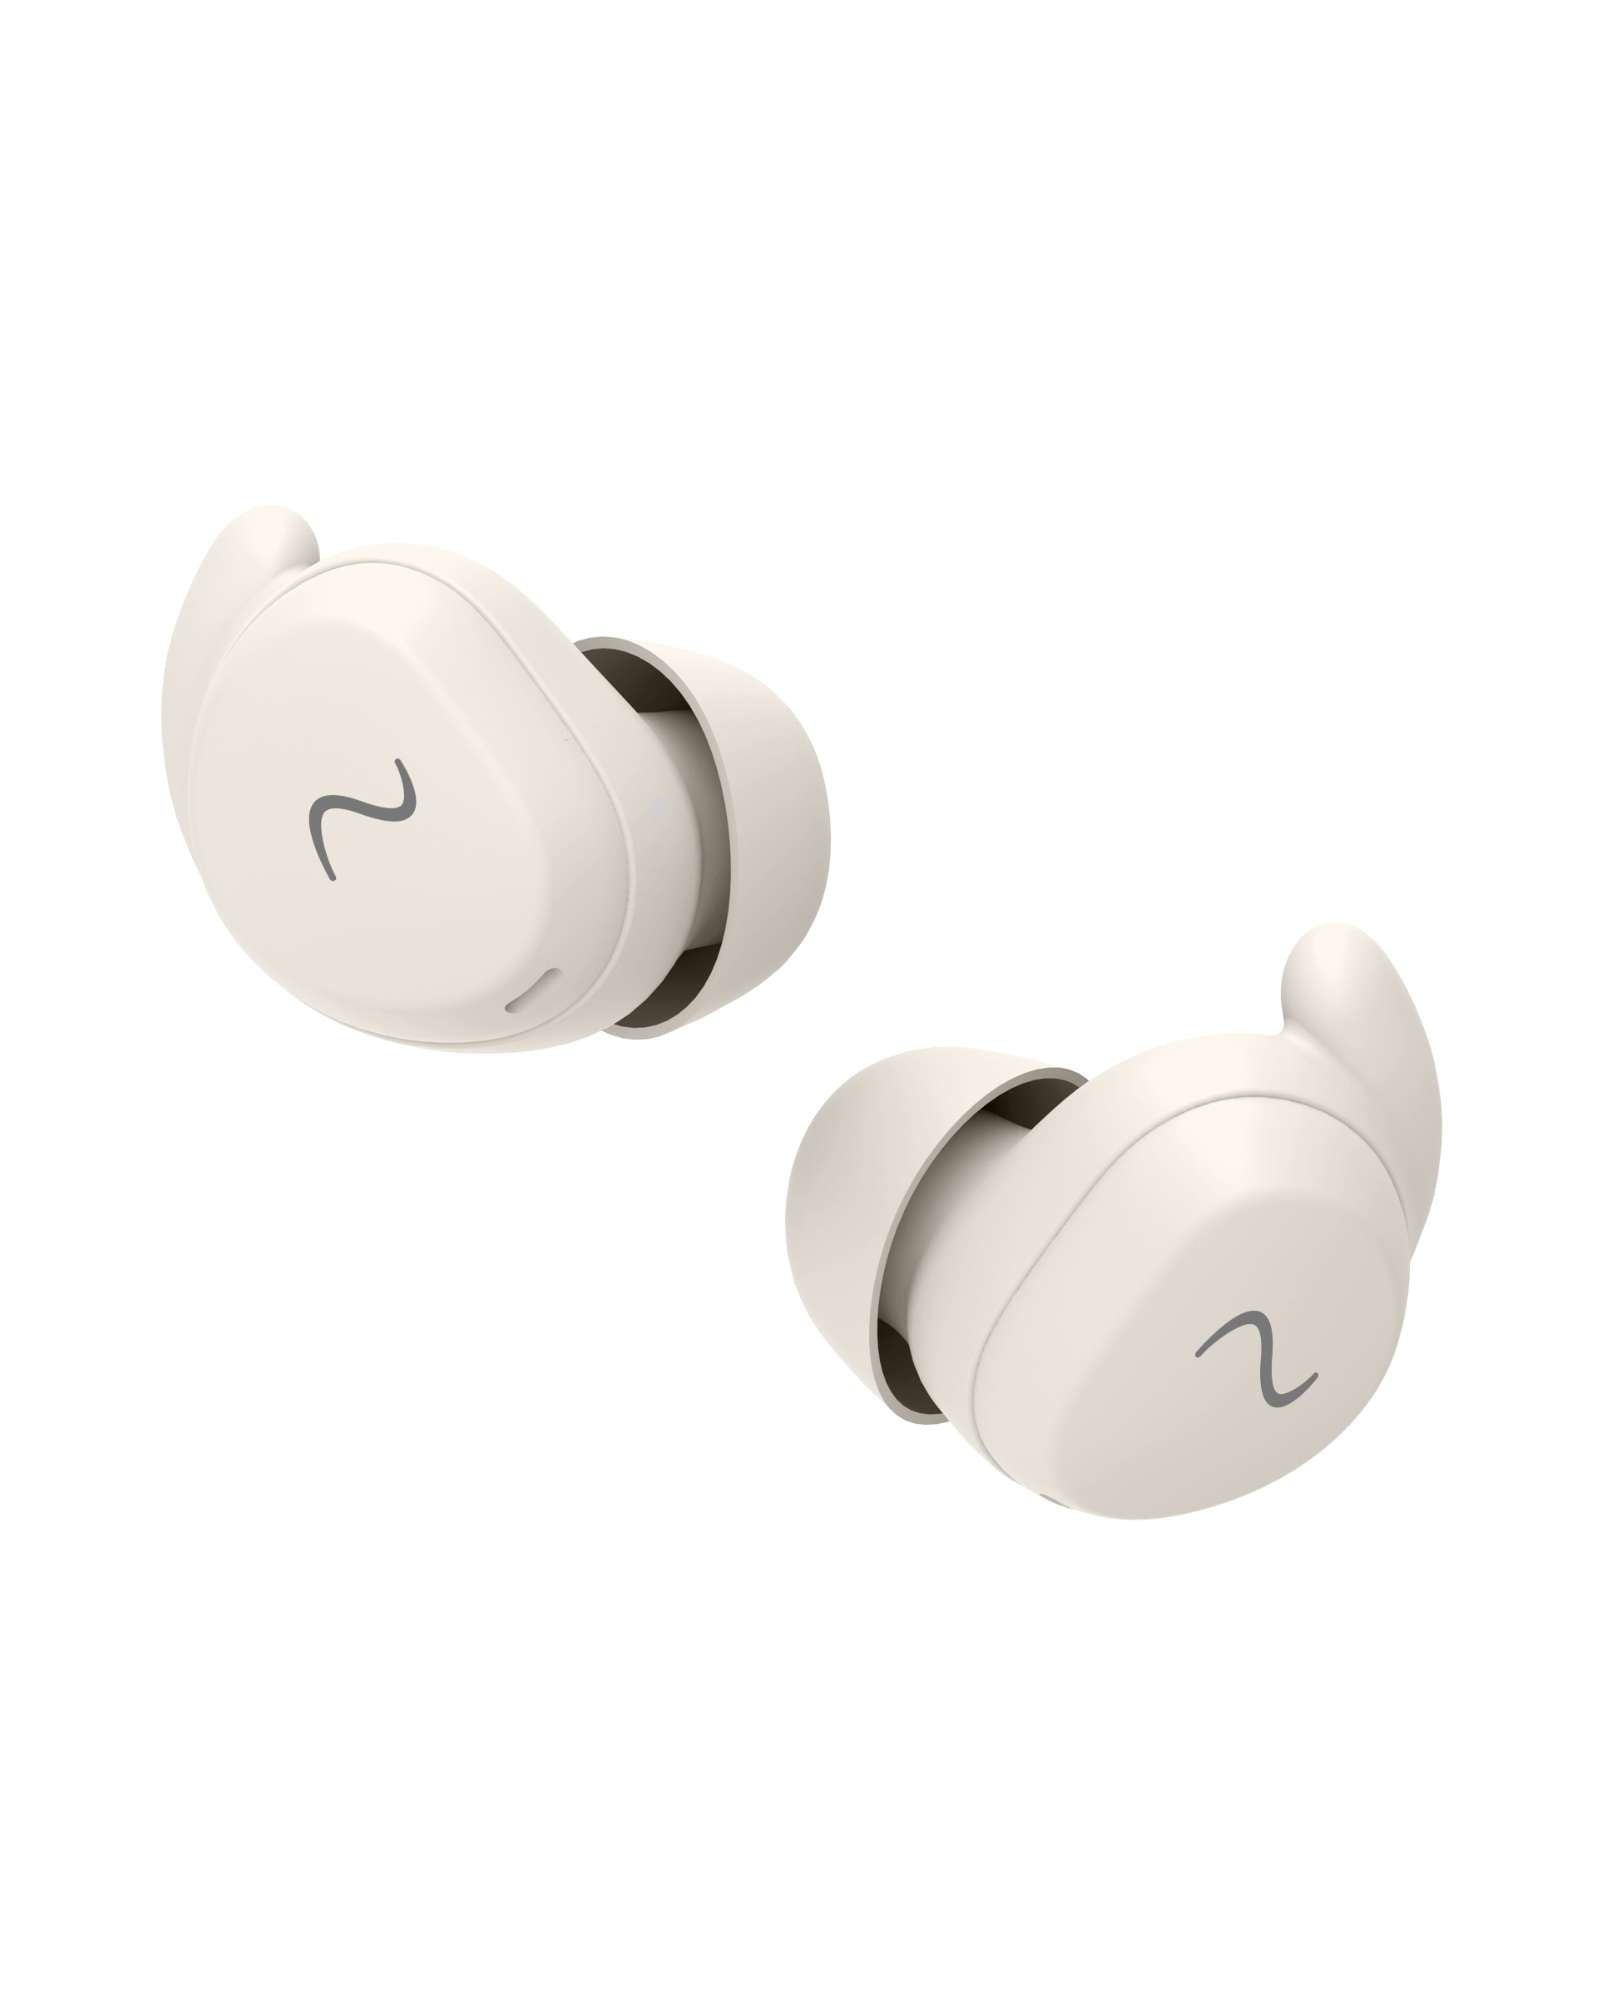 Billede af Wavell 3 Light Comfort - Trådløse bluetooth in-ear høretelefoner med Noise Cancelling hos Wavell.dk